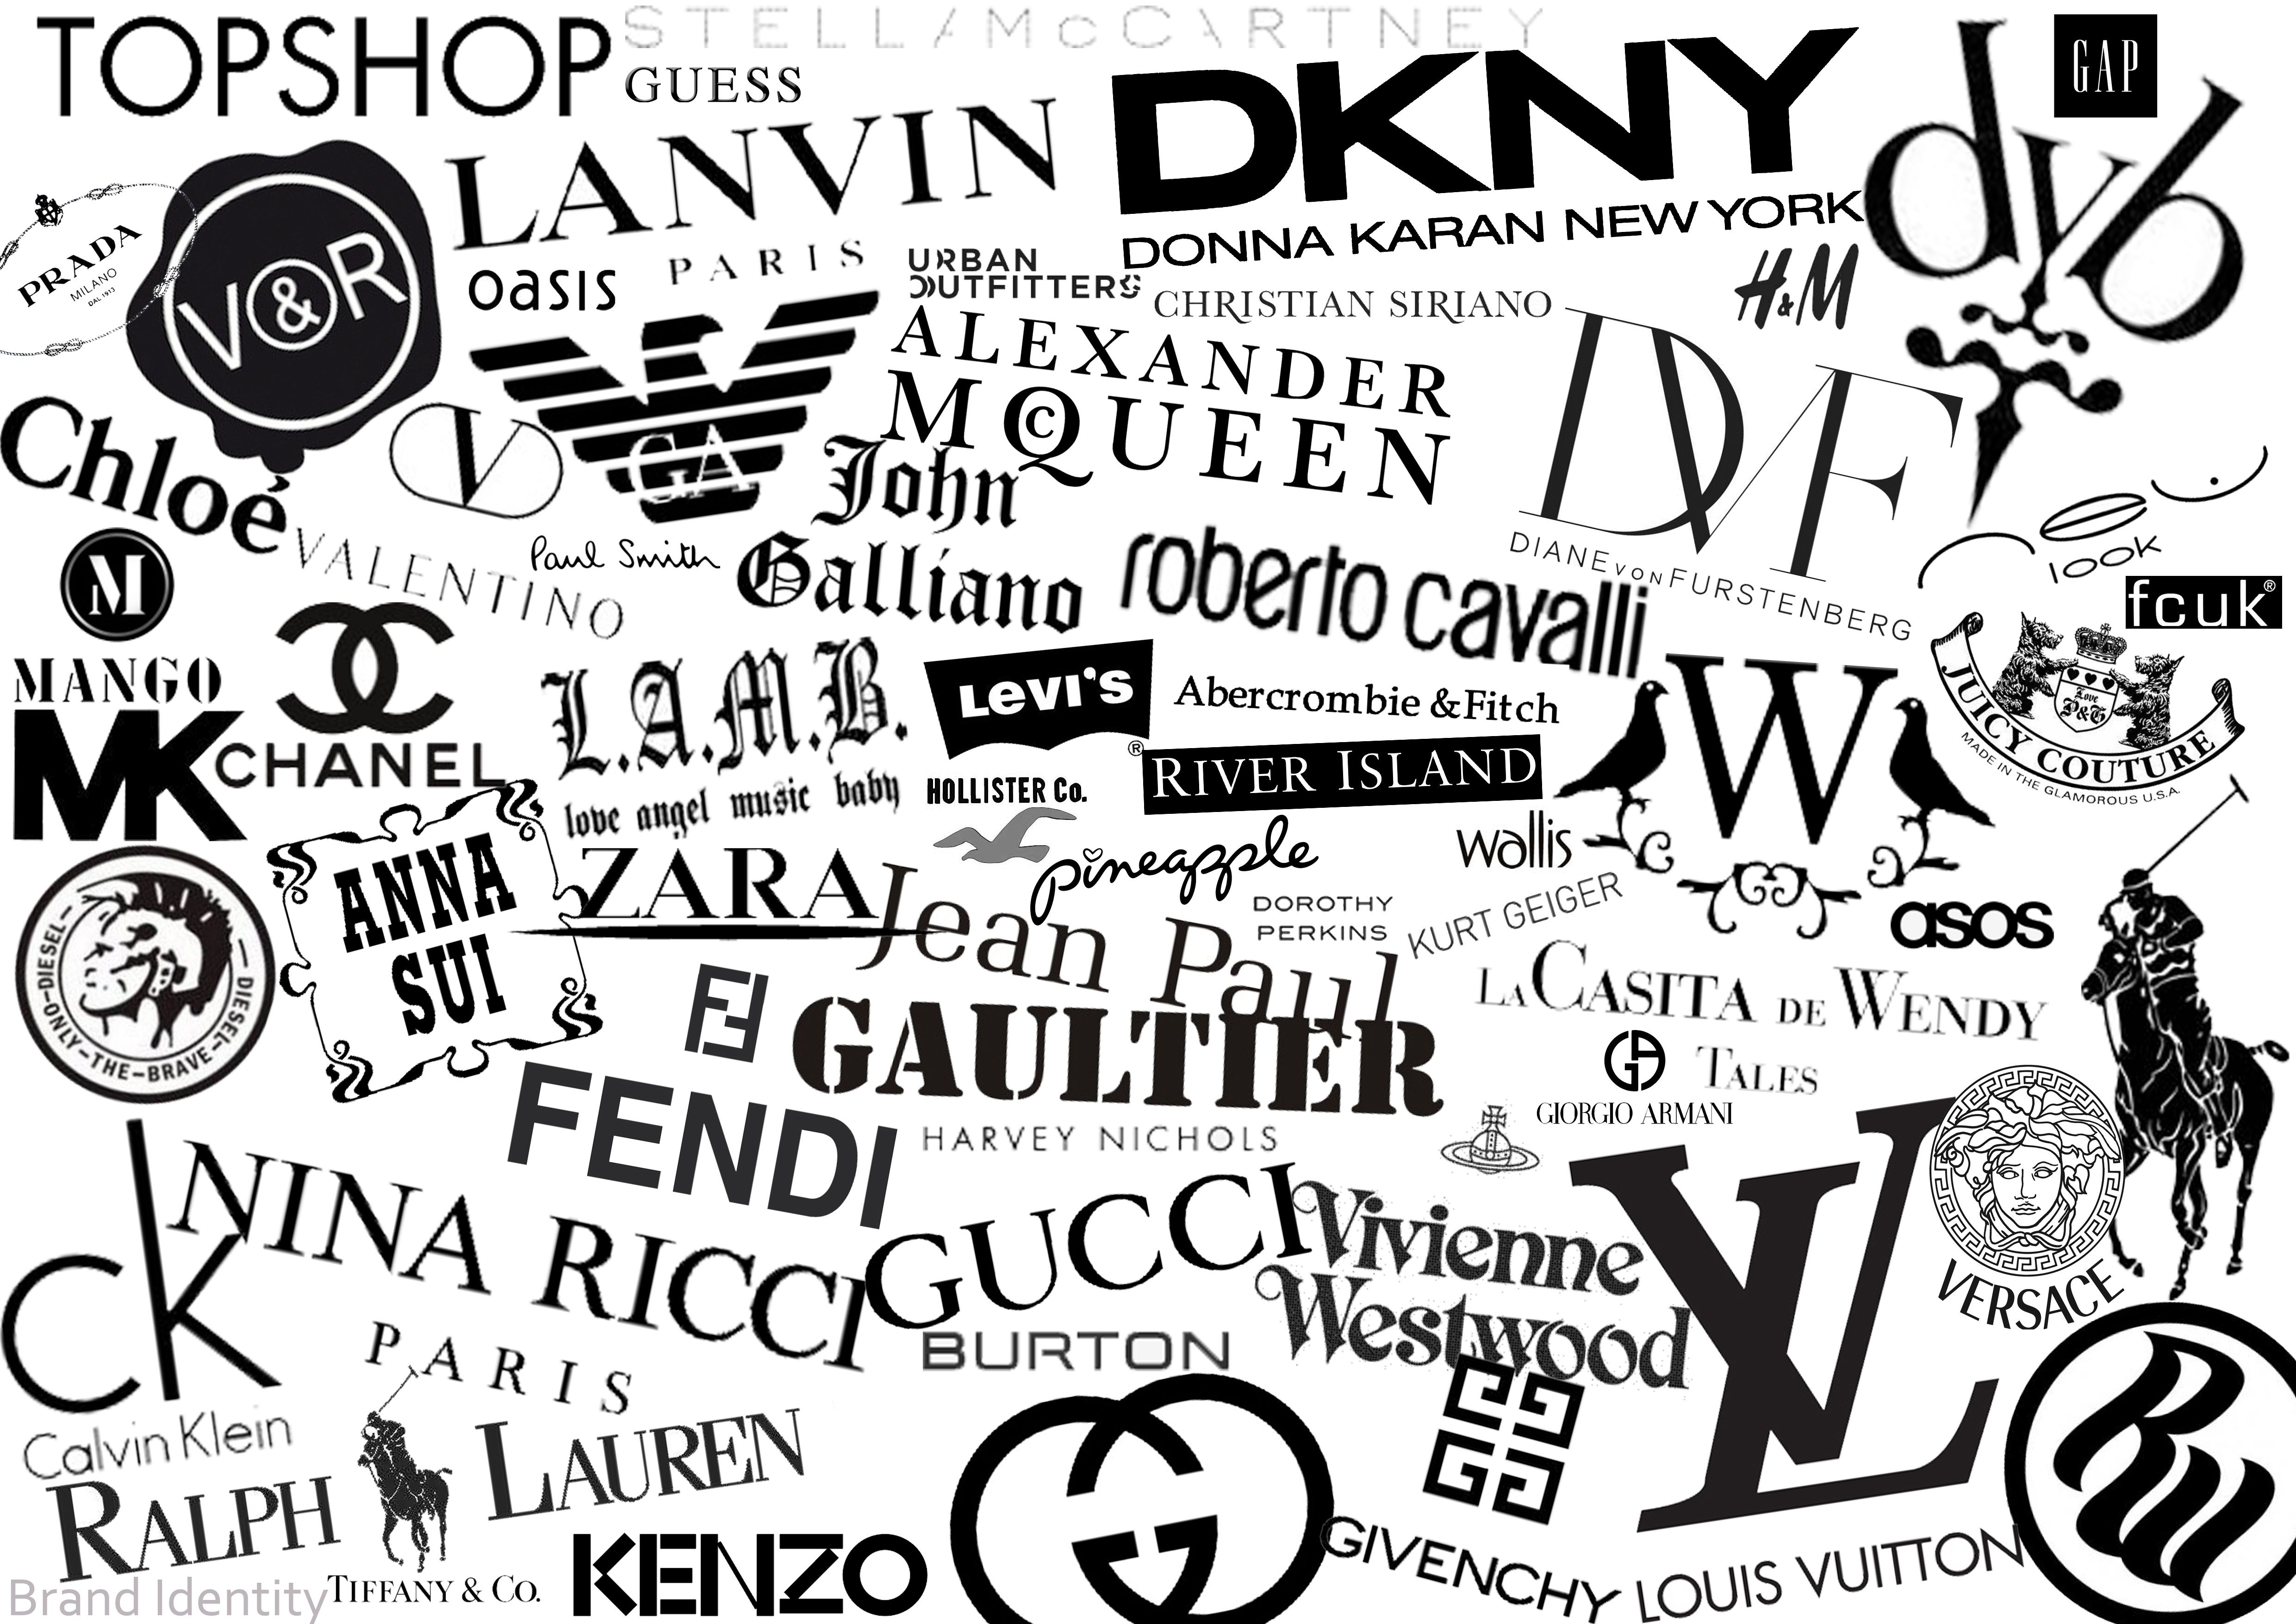 Chắc chắn bạn đã từng nghe đến những thương hiệu thiết kế nổi tiếng mang tính biểu tượng như Chanel, Gucci hay Prada. Hãy tưởng tượng xem những sản phẩm thiết kế của các thương hiệu này như thế nào? Hãy xem ảnh bên dưới để được khám phá thêm về những thương hiệu này nhé! 